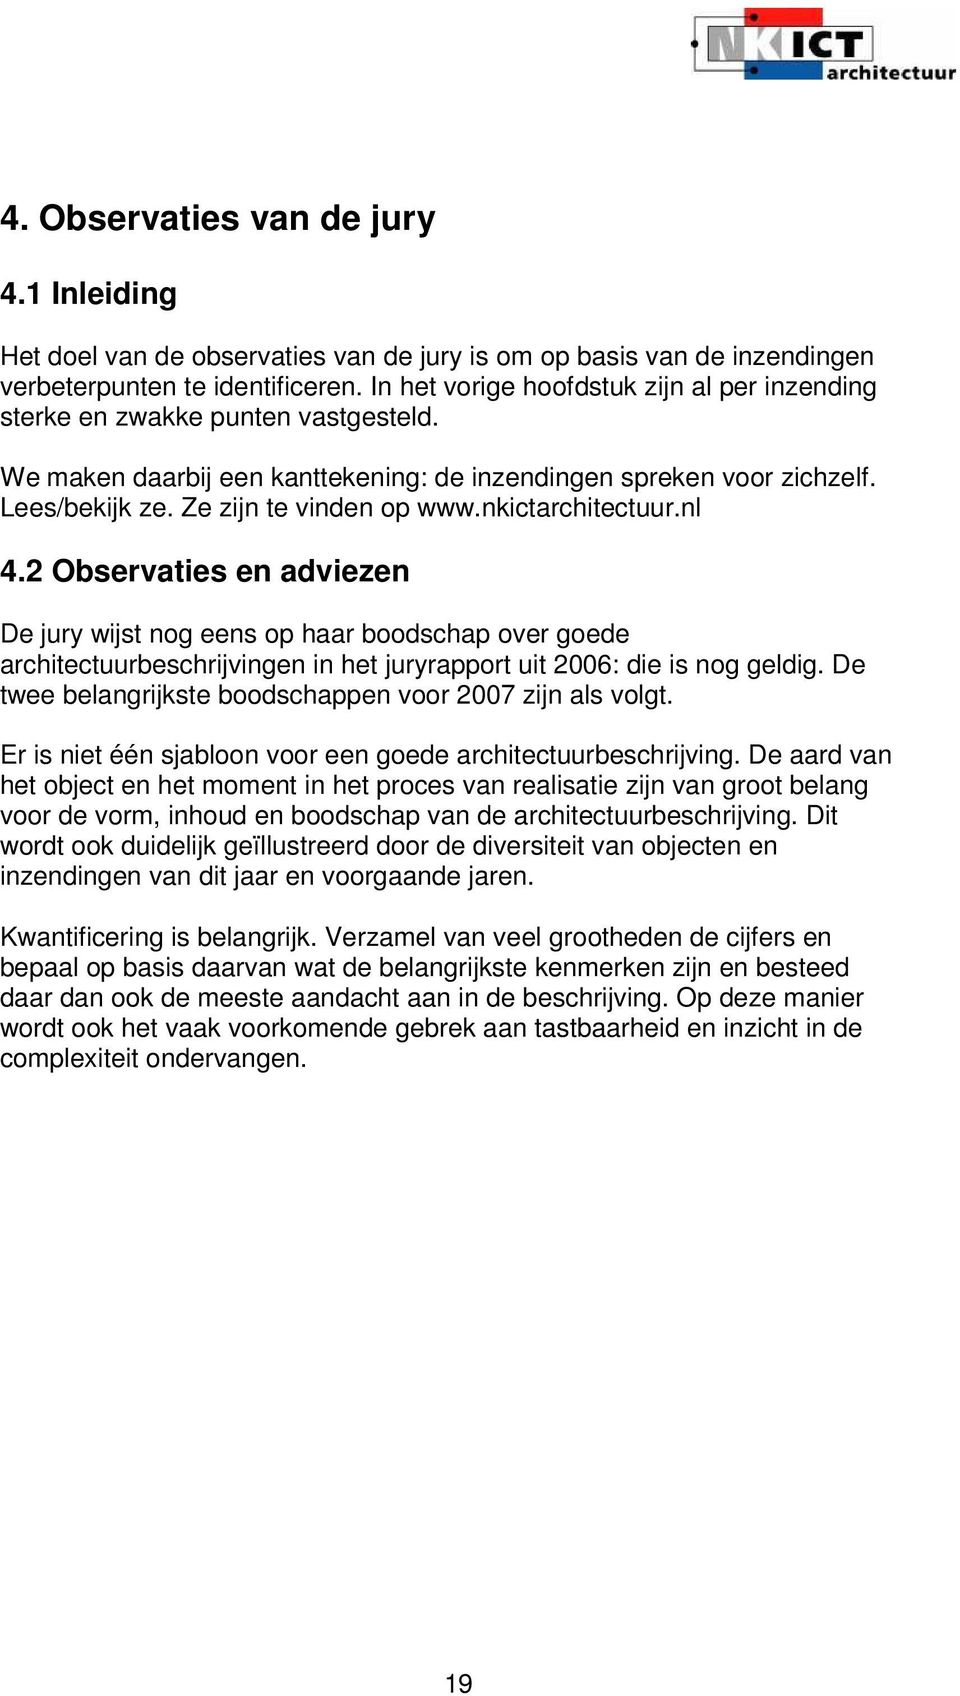 nkictarchitectuur.nl 4.2 Observaties en adviezen De jury wijst nog eens op haar boodschap over goede architectuurbeschrijvingen in het juryrapport uit 2006: die is nog geldig.